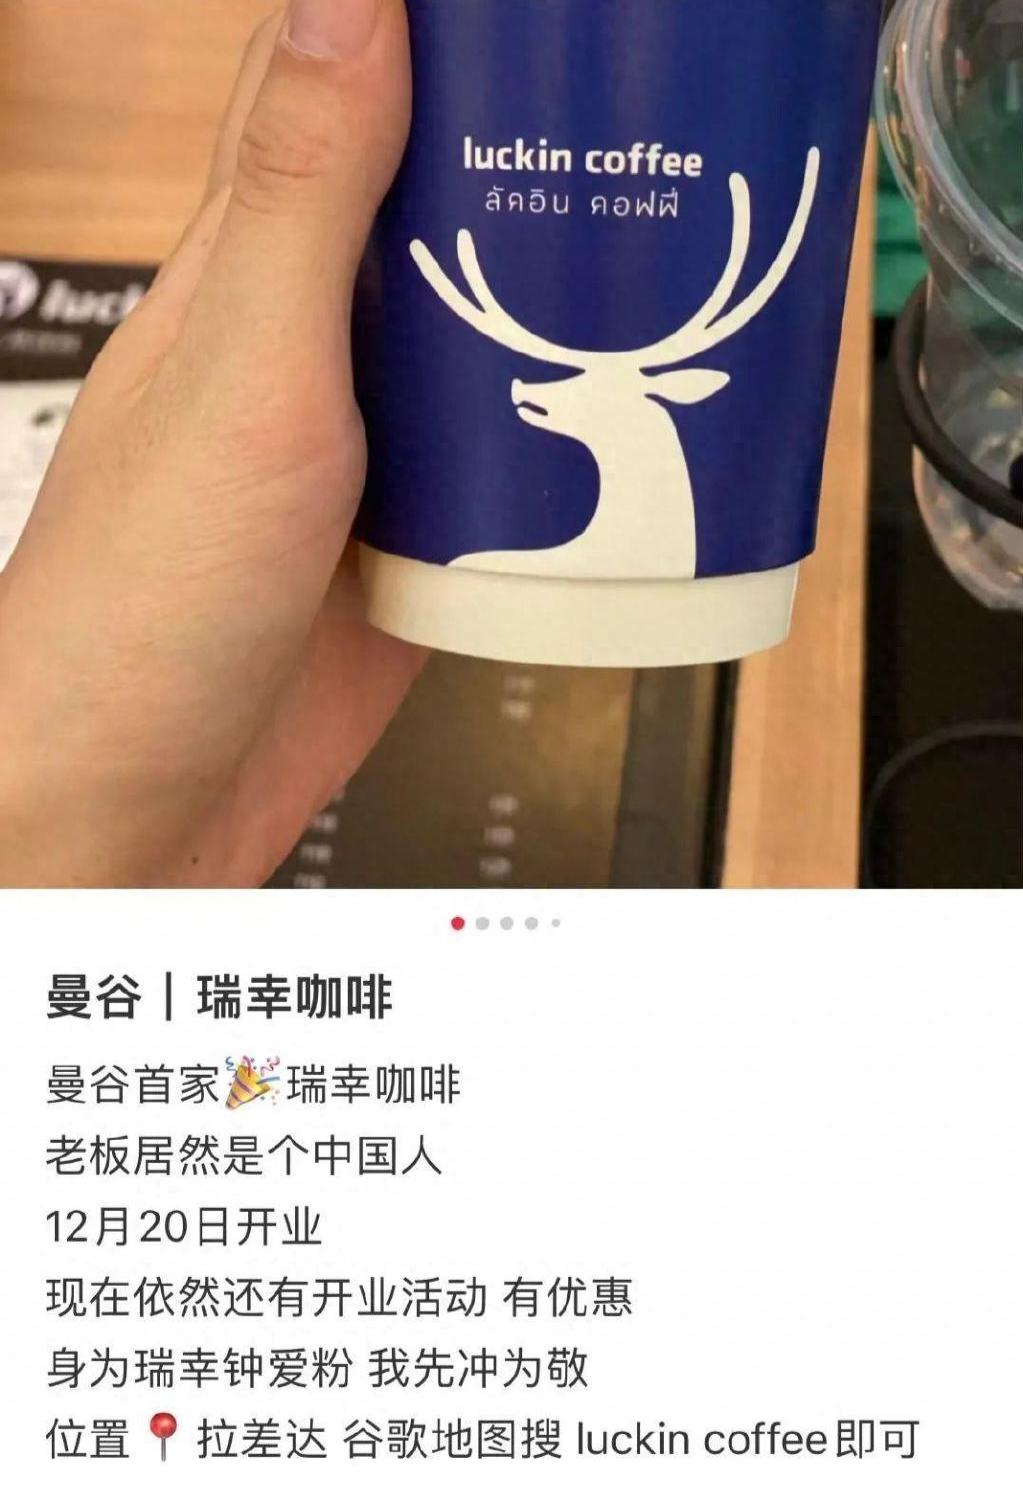 ▲此前有网友在泰国发现售卖瑞幸咖啡